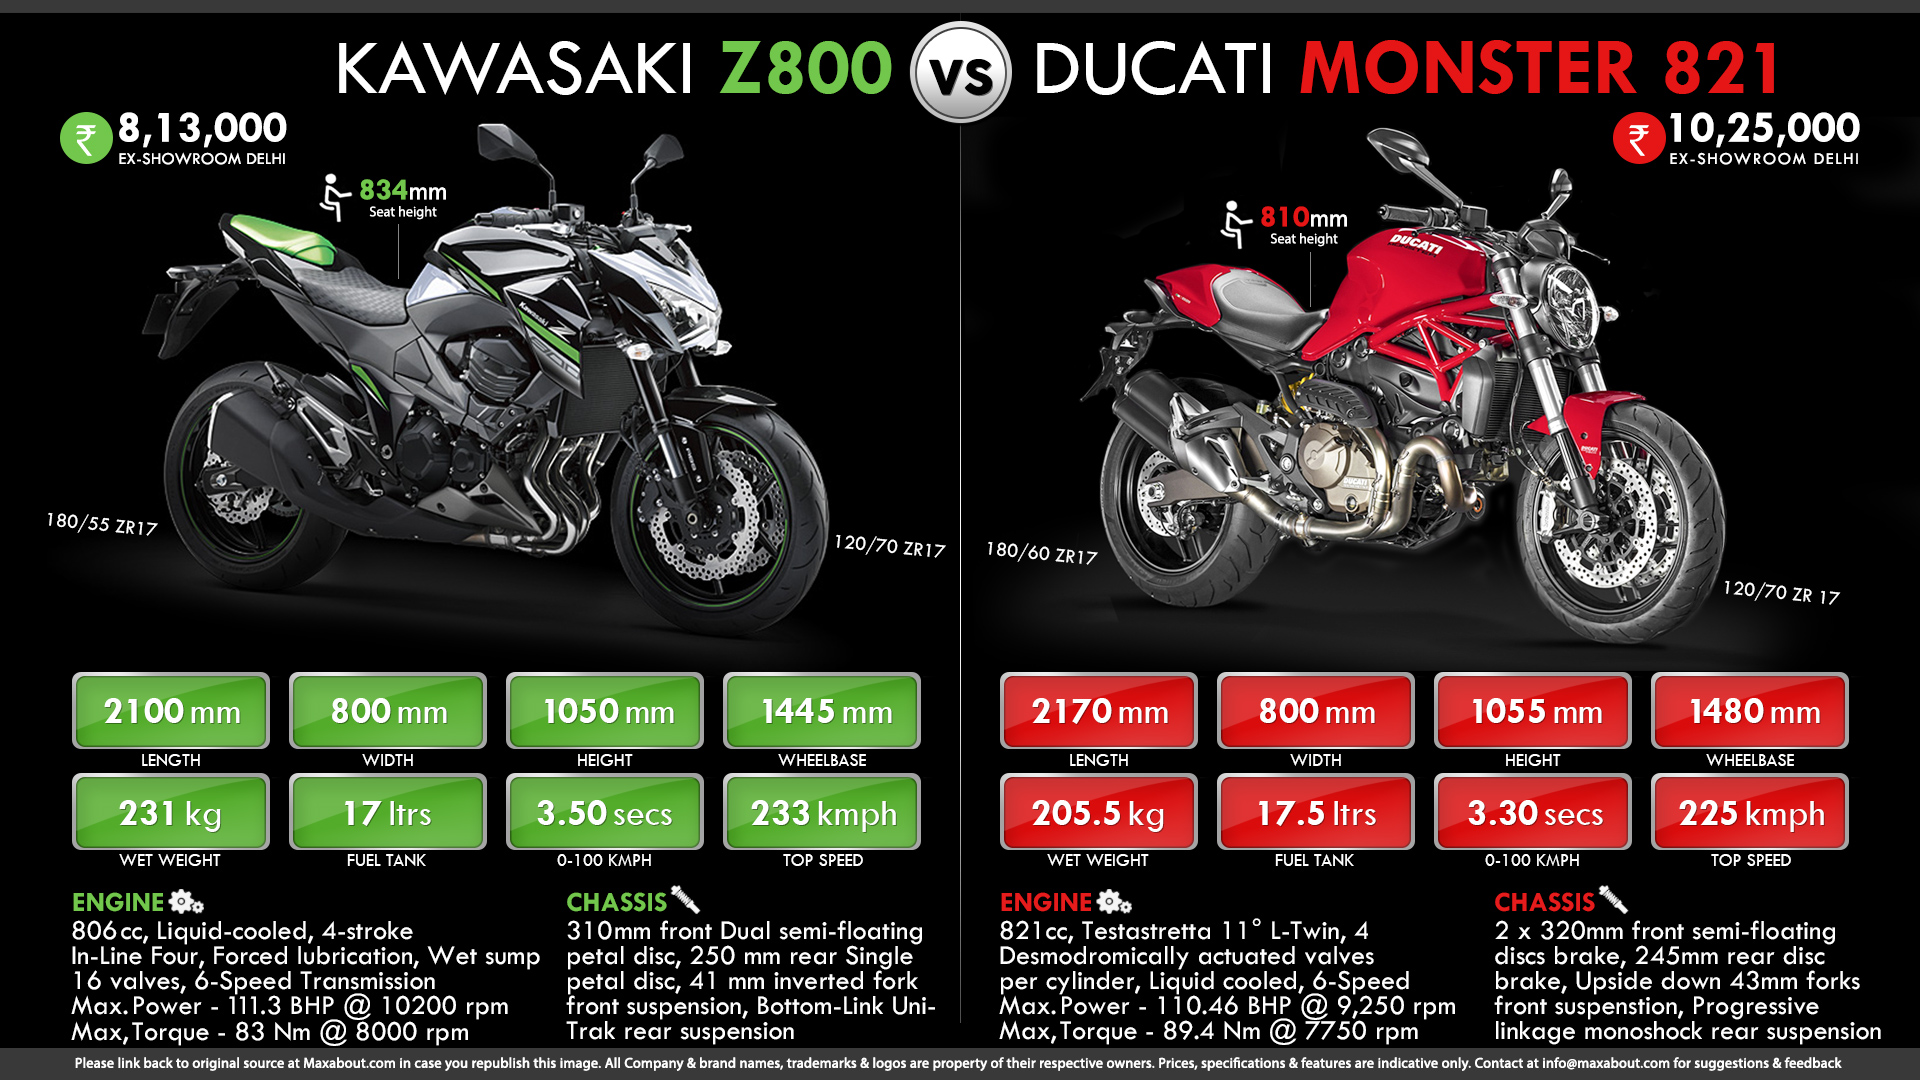 Kawasaki Z800 vs. Ducati Monster